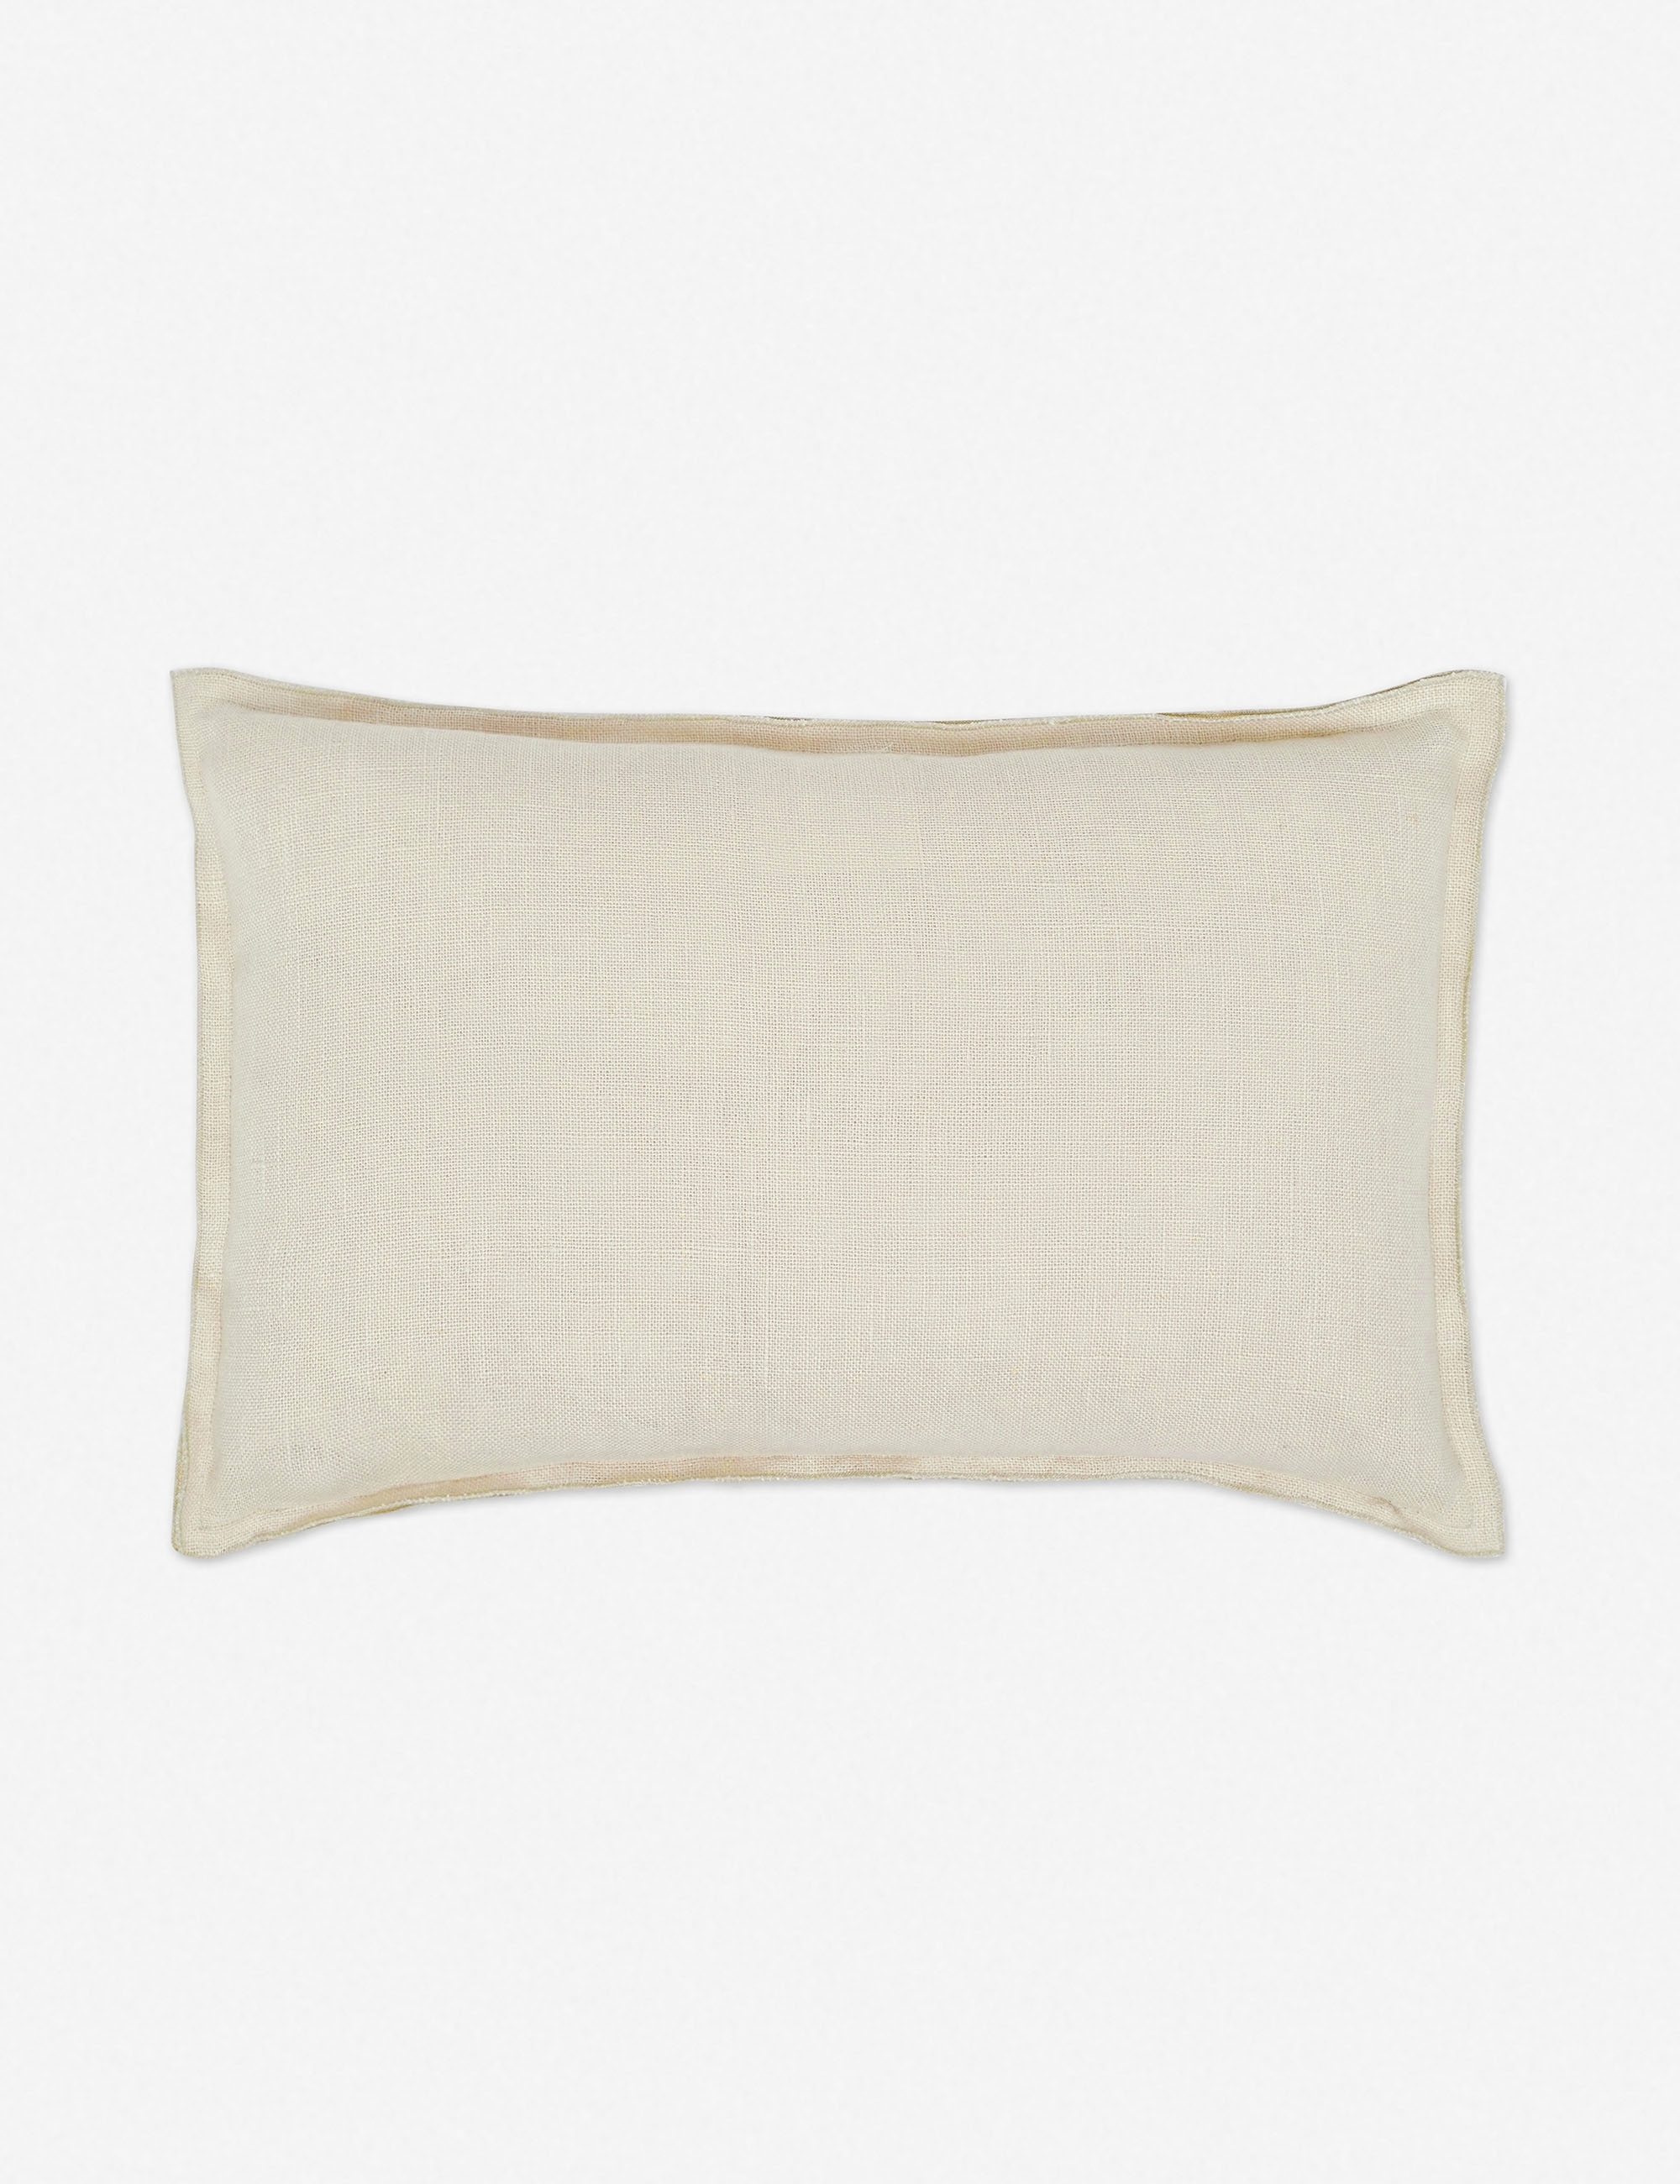 Arlo Linen Lumbar Pillow, Light Natural - Image 2